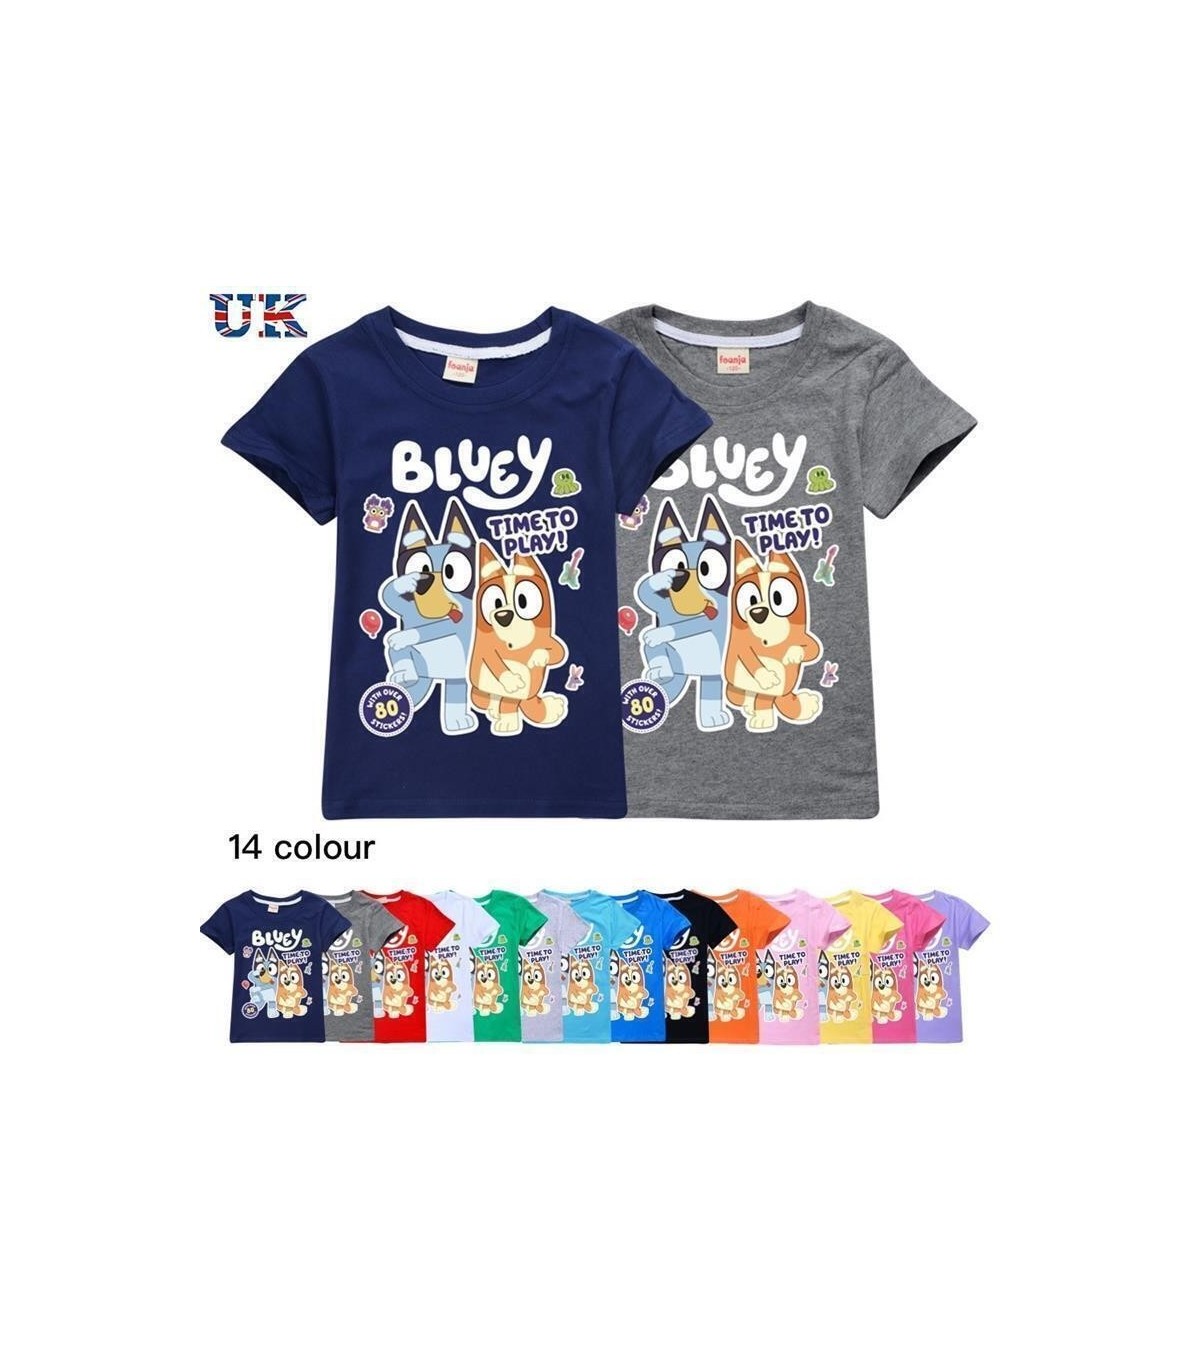 Bingo Bluey Camiseta - Camisetas - AliExpress